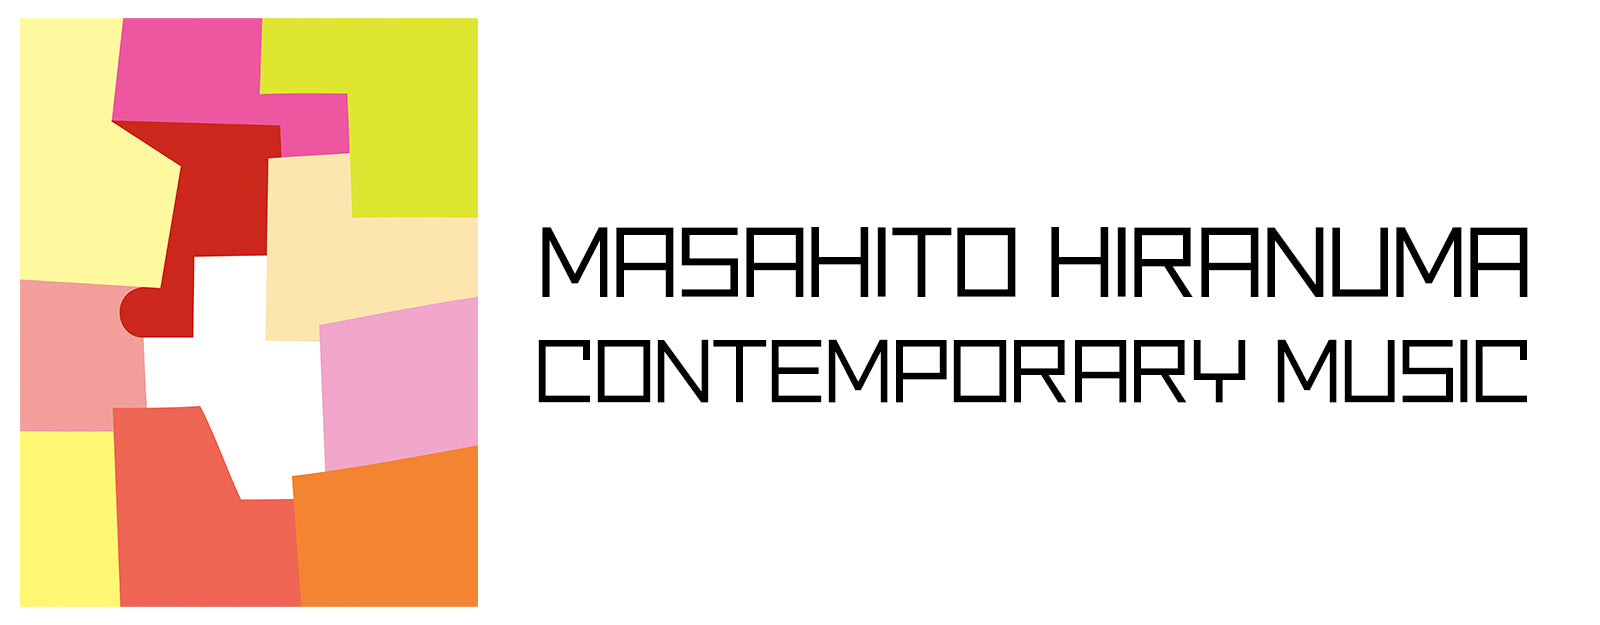 MASAHITO HIRANUMA 個展「CONTEMPORARY MUSIC」